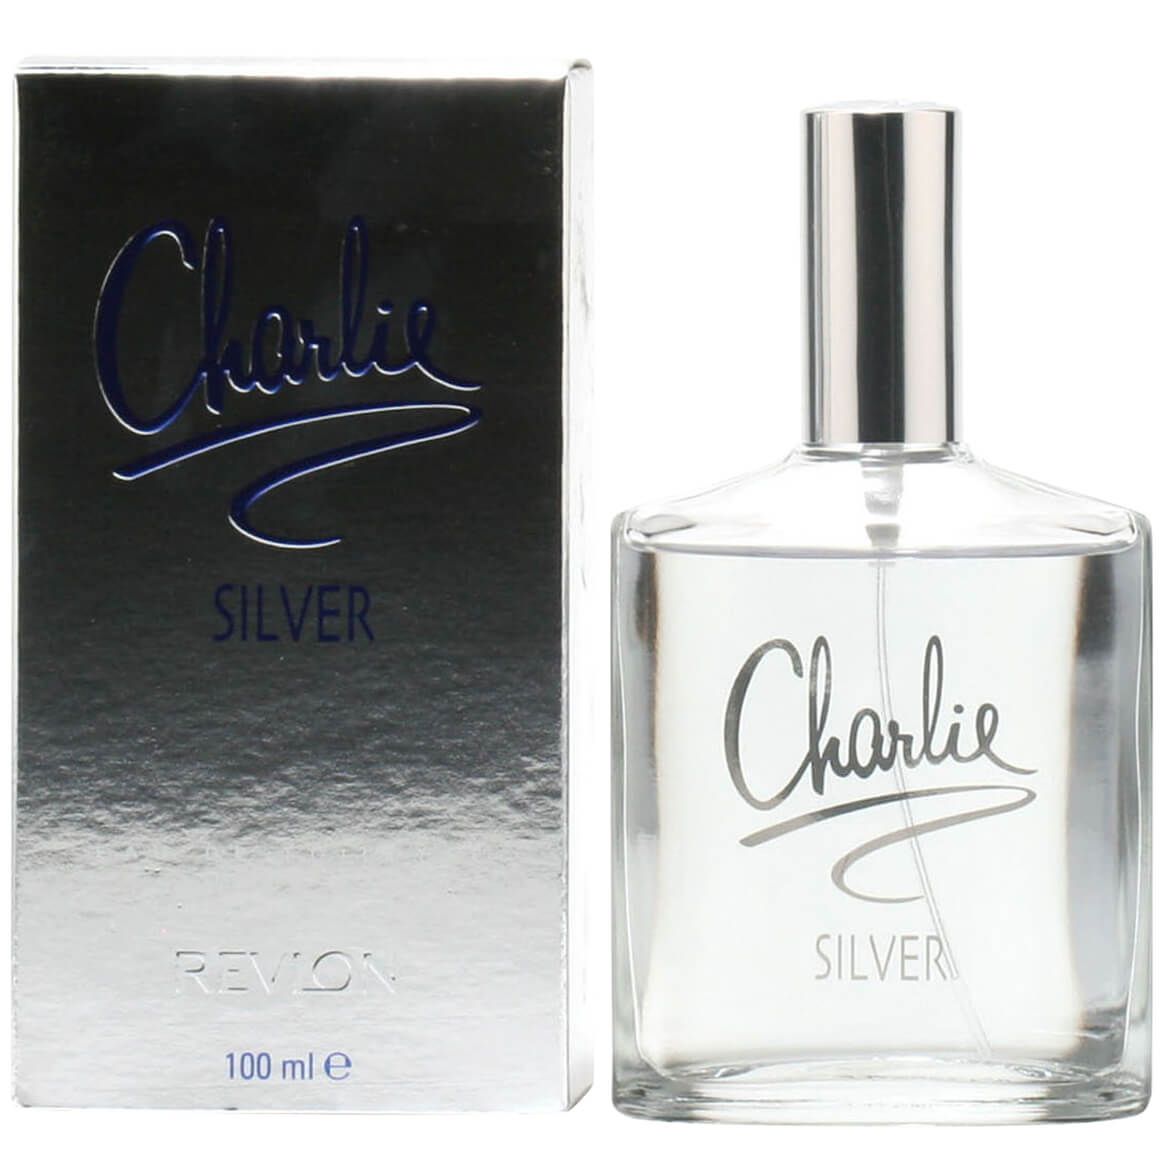 Revlon Charlie Silver for Women EDT, 3.4 fl. oz. + '-' + 362244